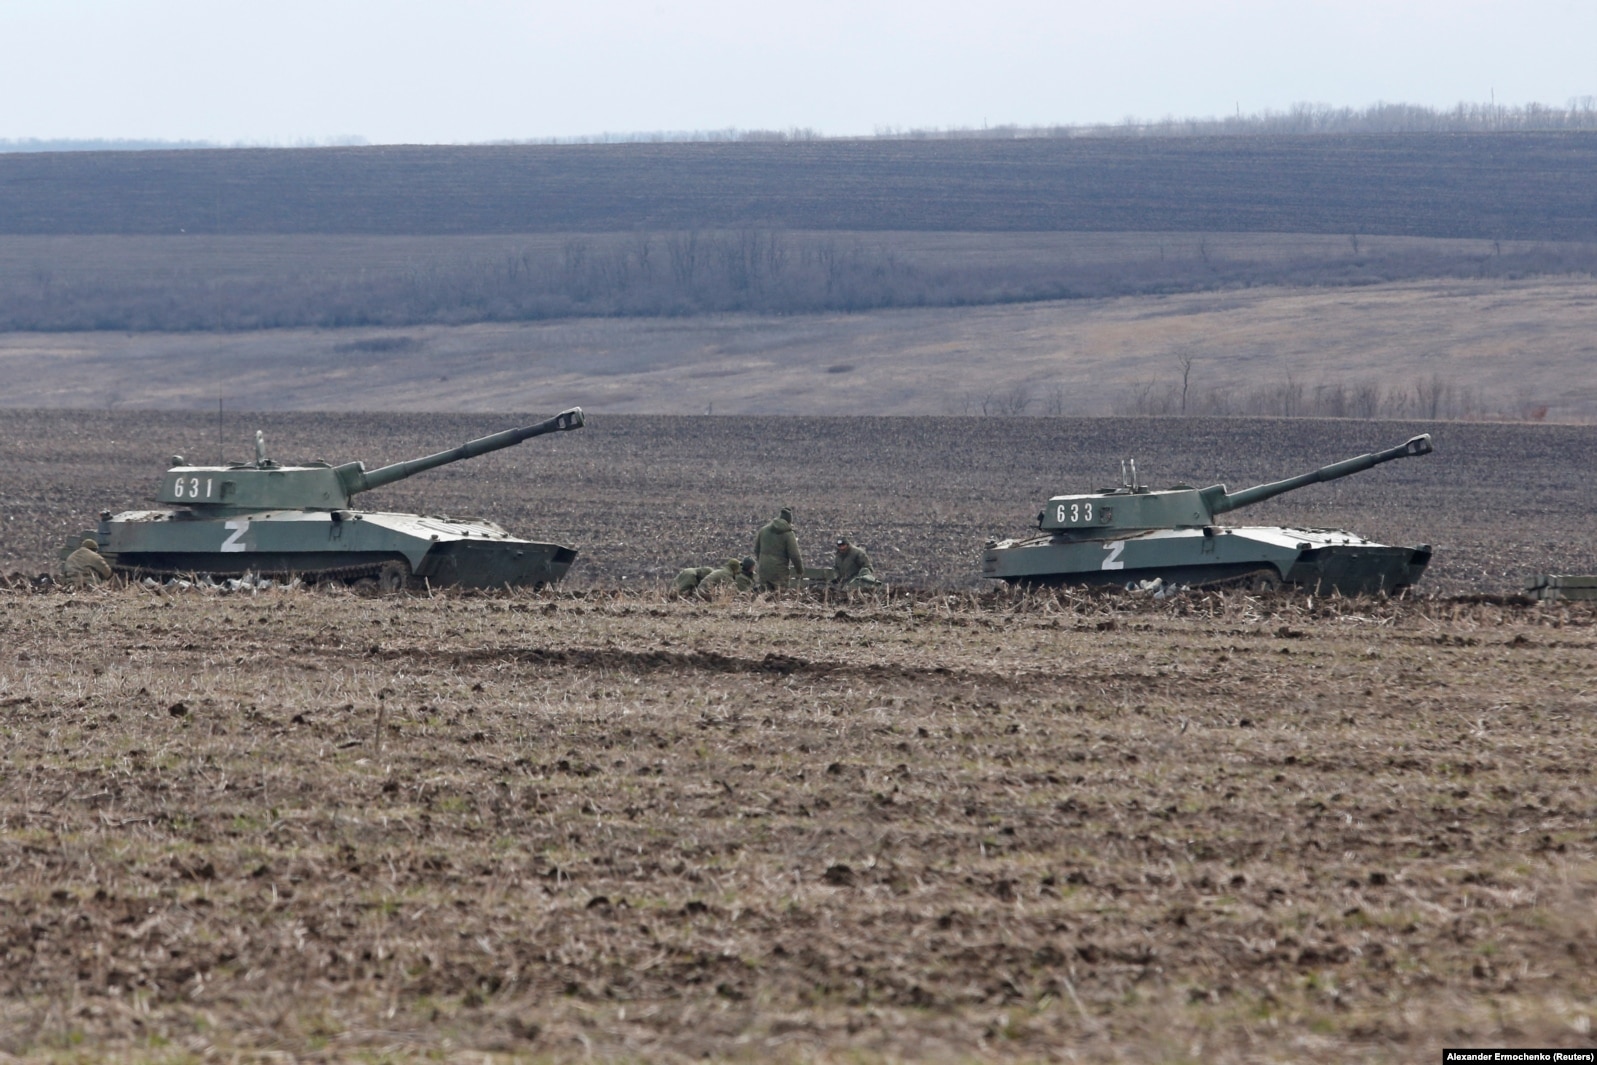 Tanket ruse me simbolin 'Z' duke lëvizur në fshatin Bugas në rajonin ukrainas të Donjeckut. 6 mars 2022.